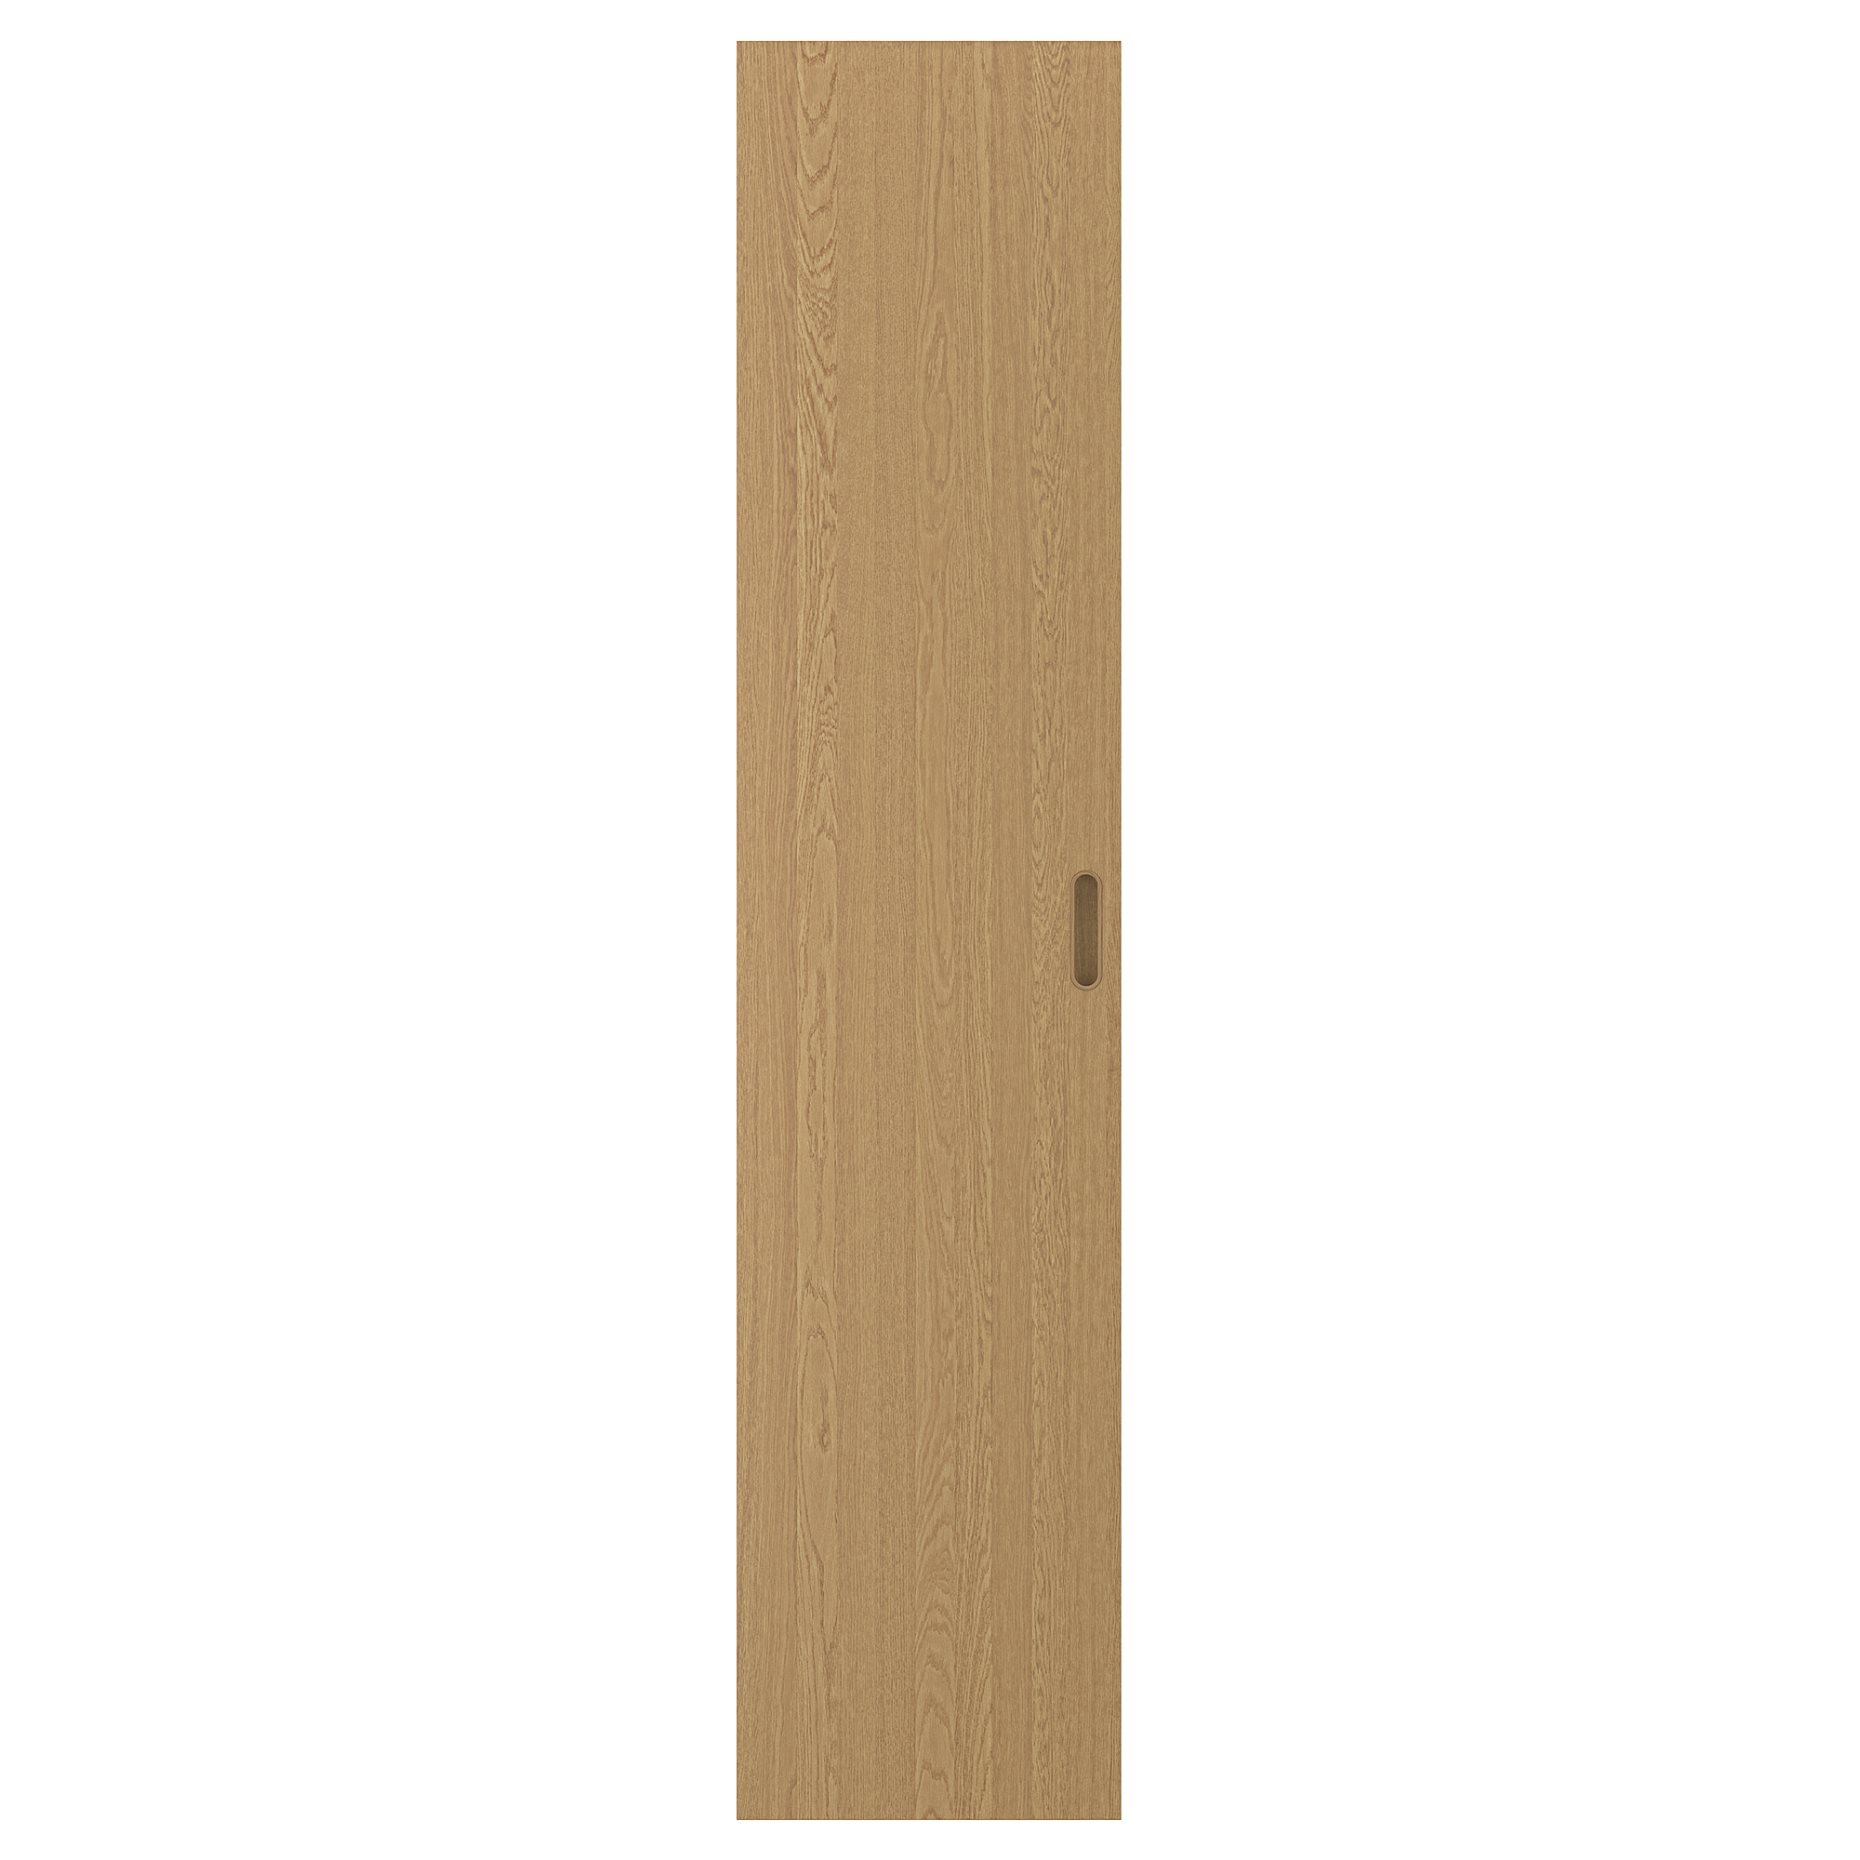 TONSTAD, πόρτα, 50x229 cm, 905.102.62